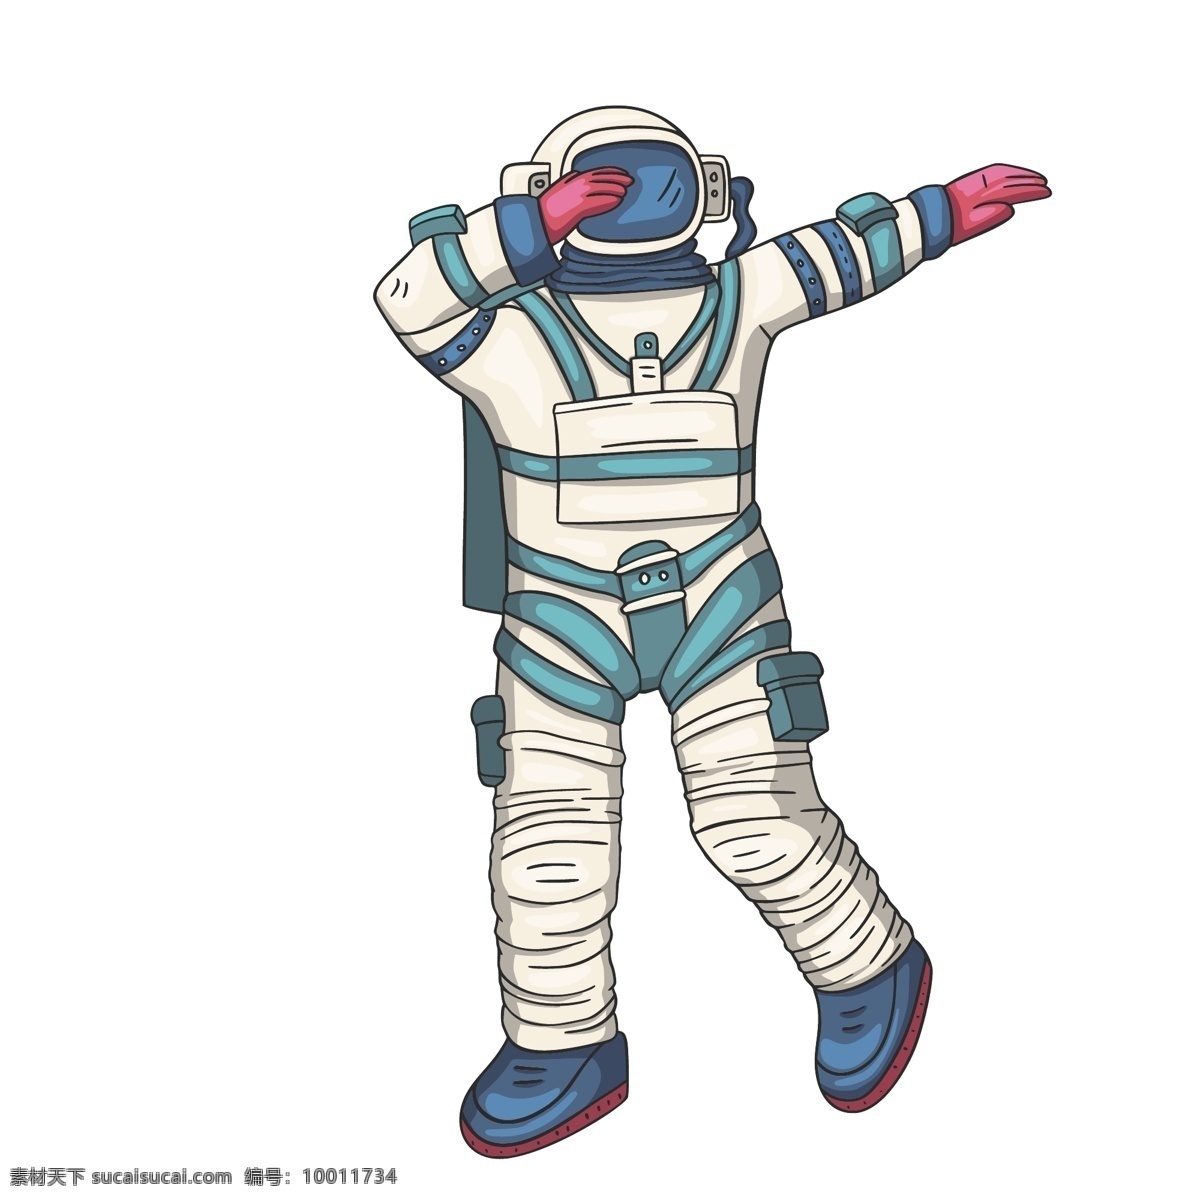 宇航员 卡通 插画 宇航员插画 卡通宇航员 太空主题插画 人物插画 航空航天插画 涂鸦插画 动漫动画